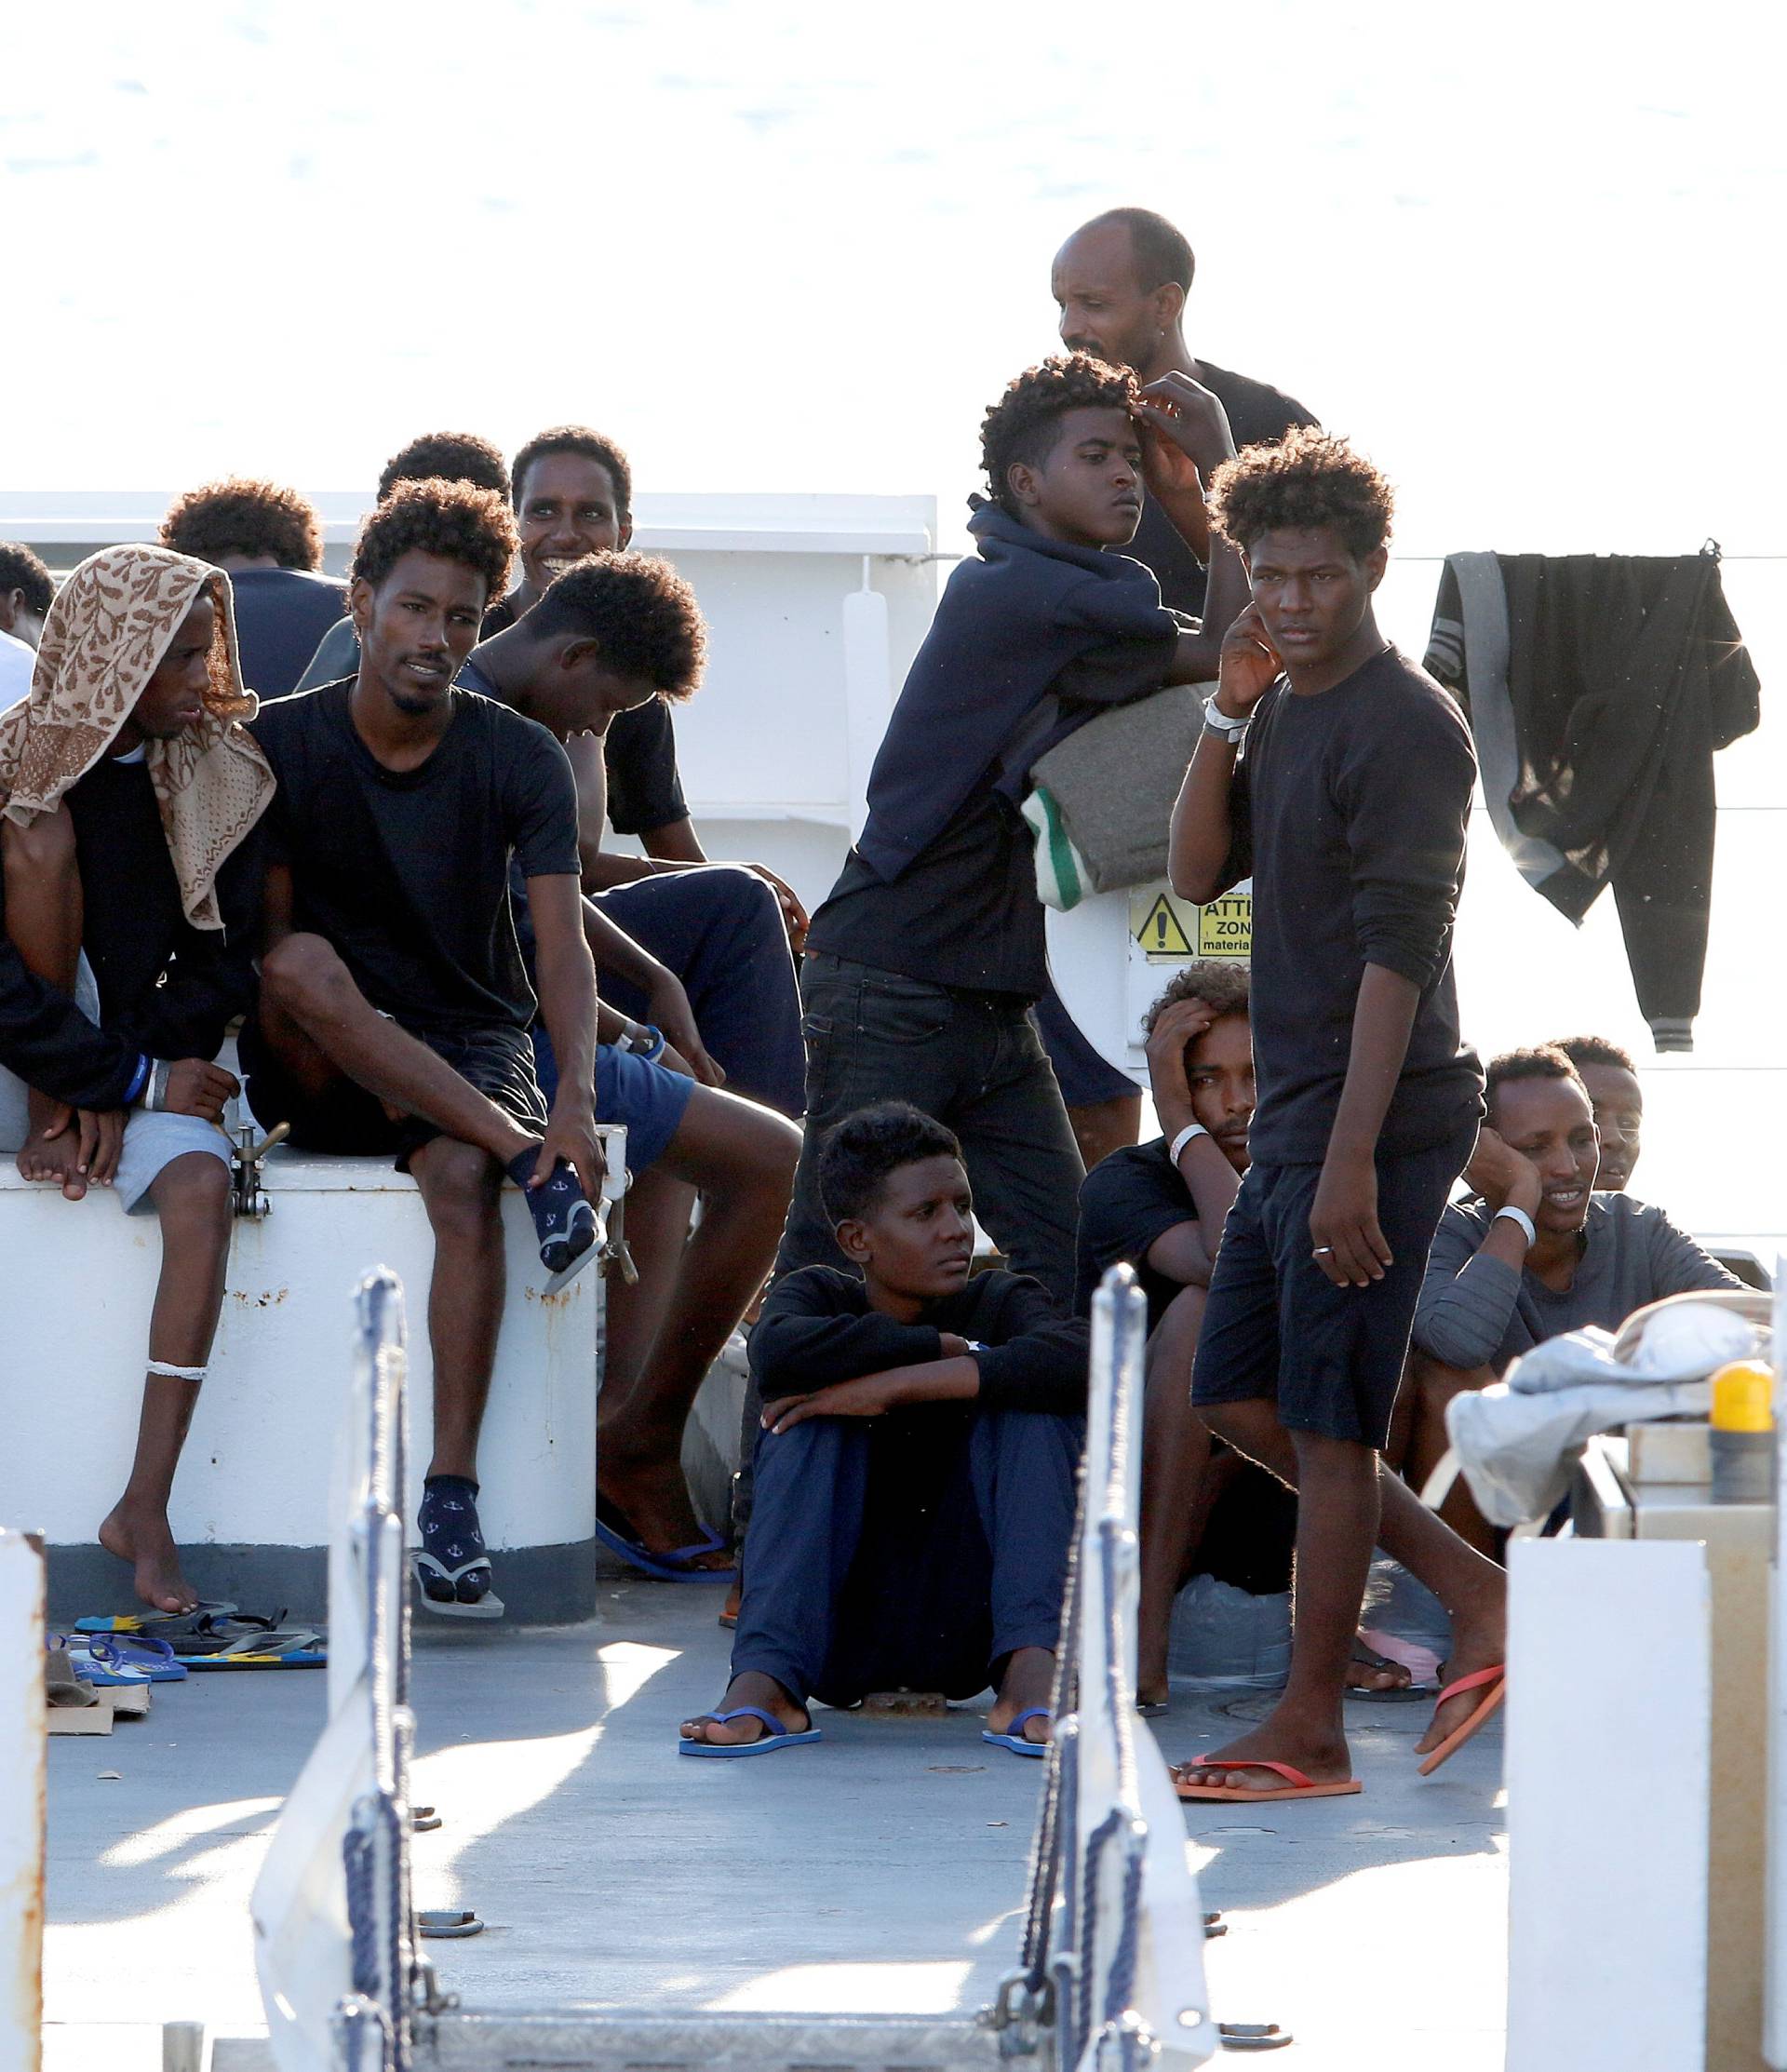 FILE PHOTO: Migrants wait to disembark from the Italian coast guard vessel "Diciotti" at the port of Catania